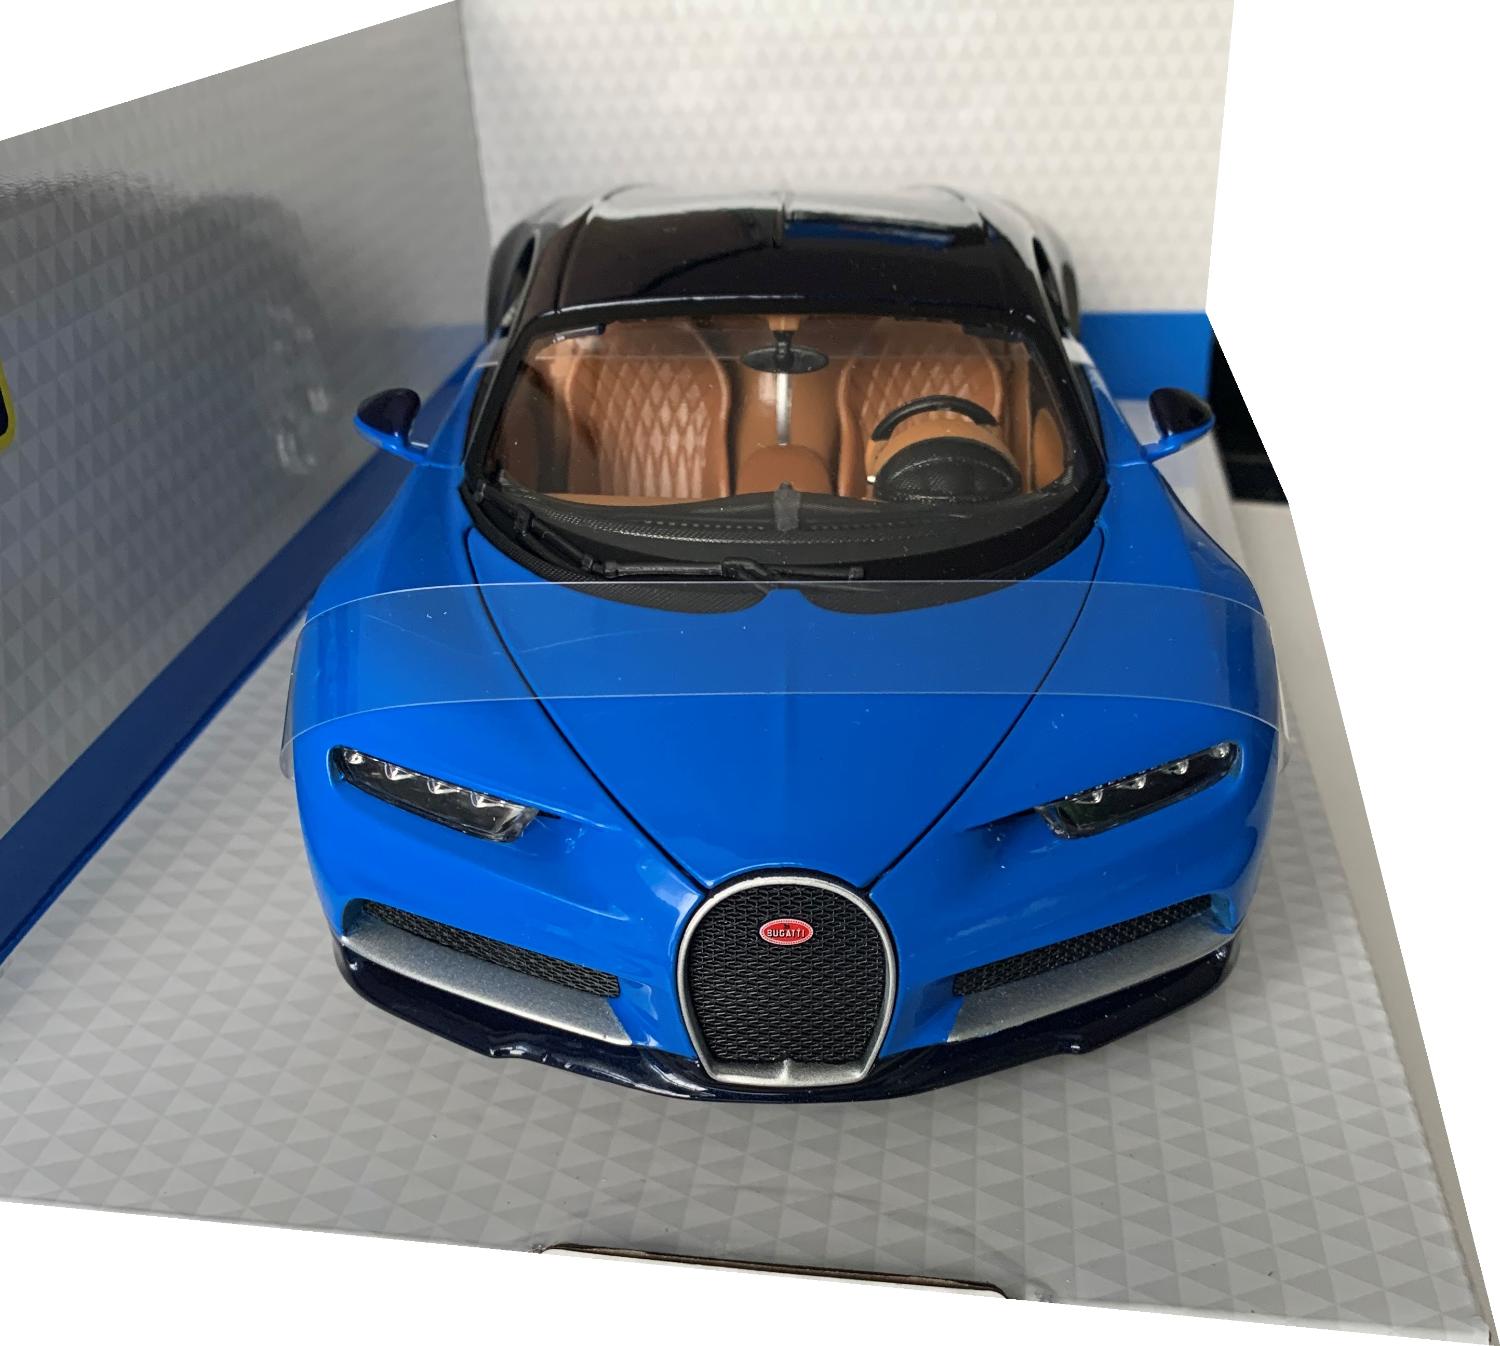 Bugatti Chiron in blue and black 1:18 scale model from Bburago